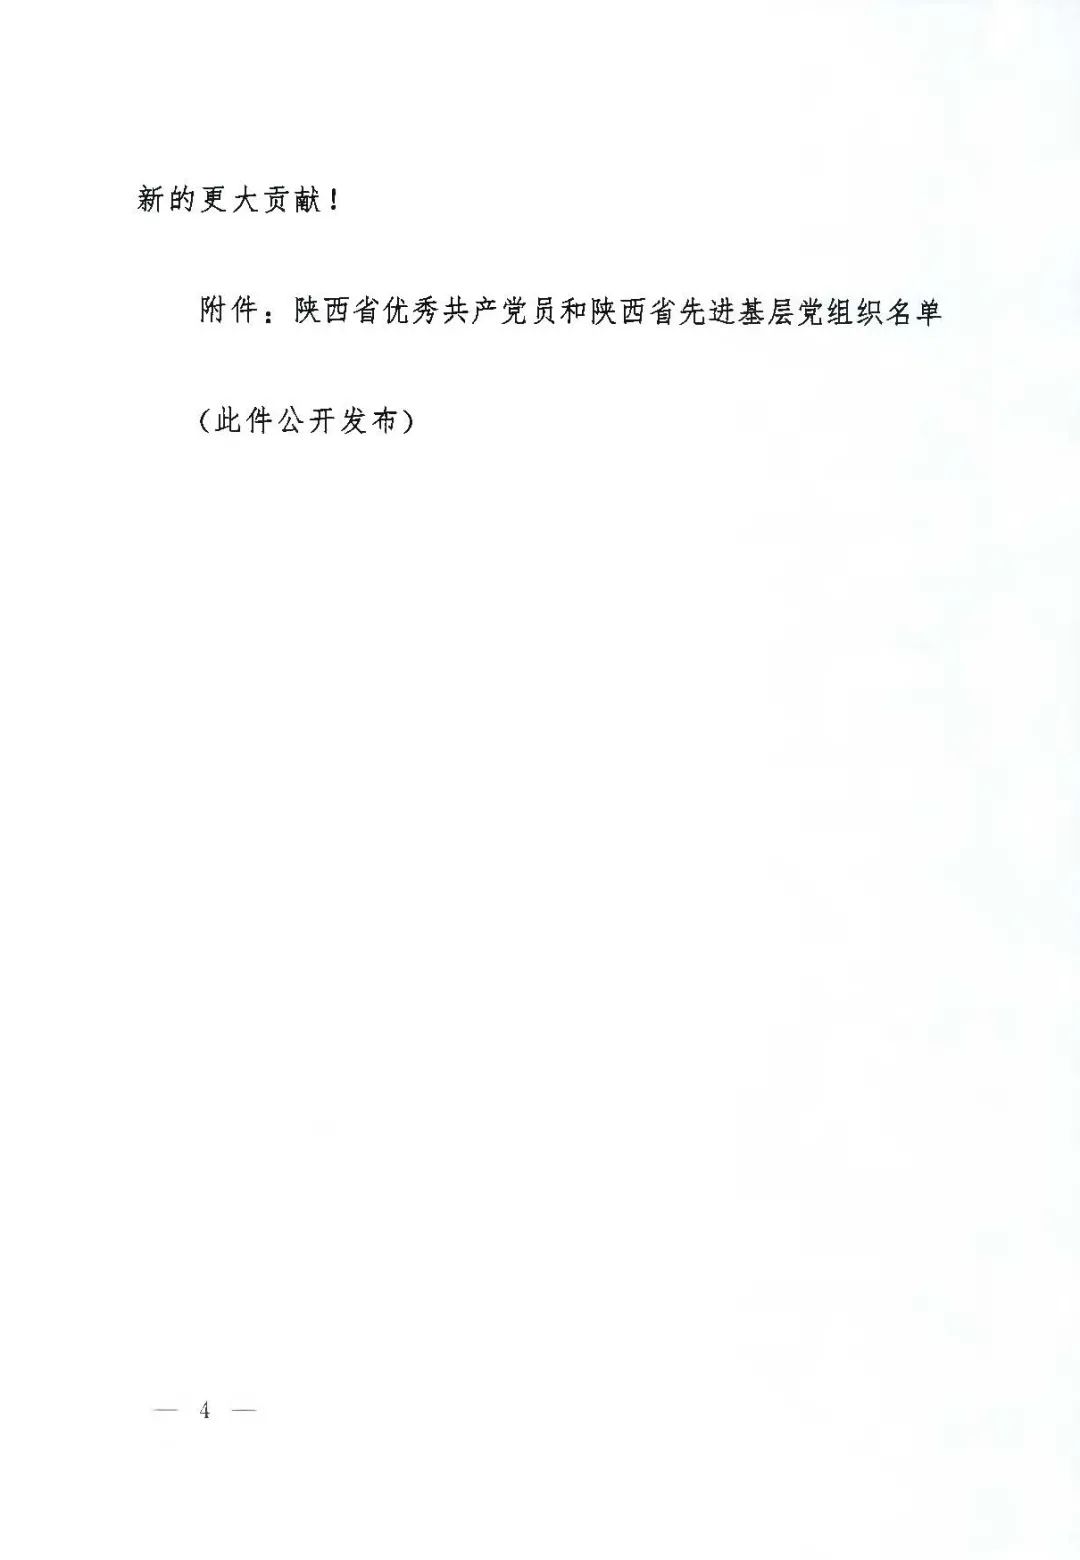 我院王海昌教授被评为「陕西省优秀共产党员」